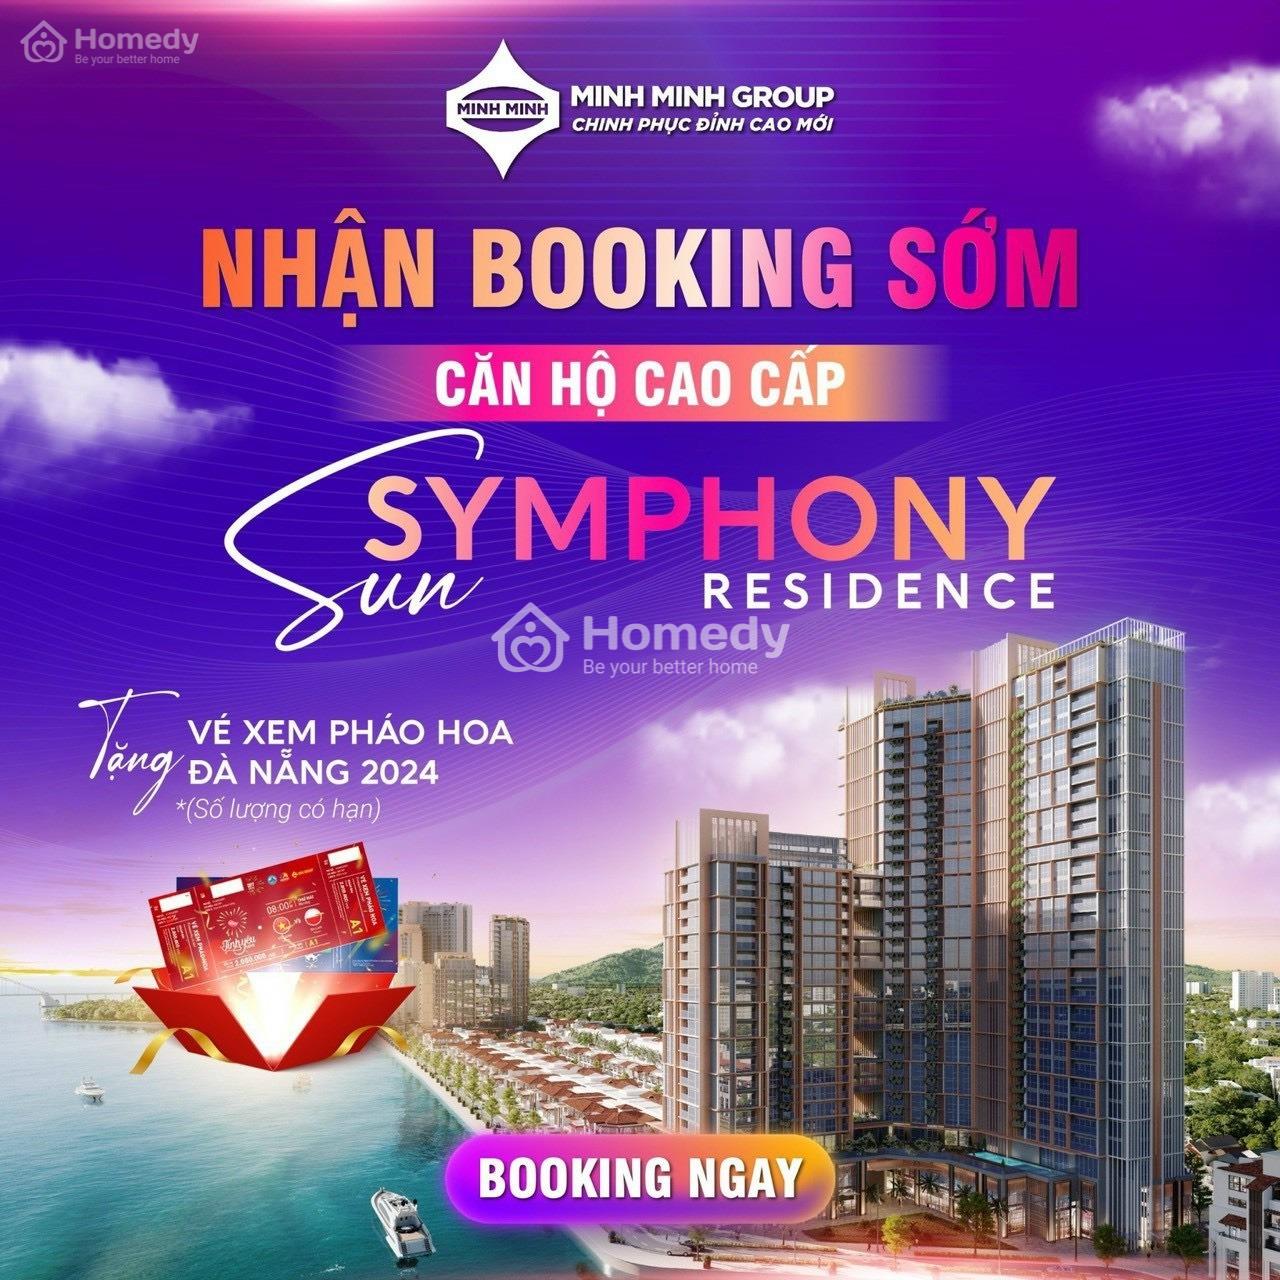 Sun Symphony Residence - Kiệt Tác Bên Sông Hàn - Nhận Booking Suất Ưu Tiên - Tặng Vé Xem Pháo Hoa